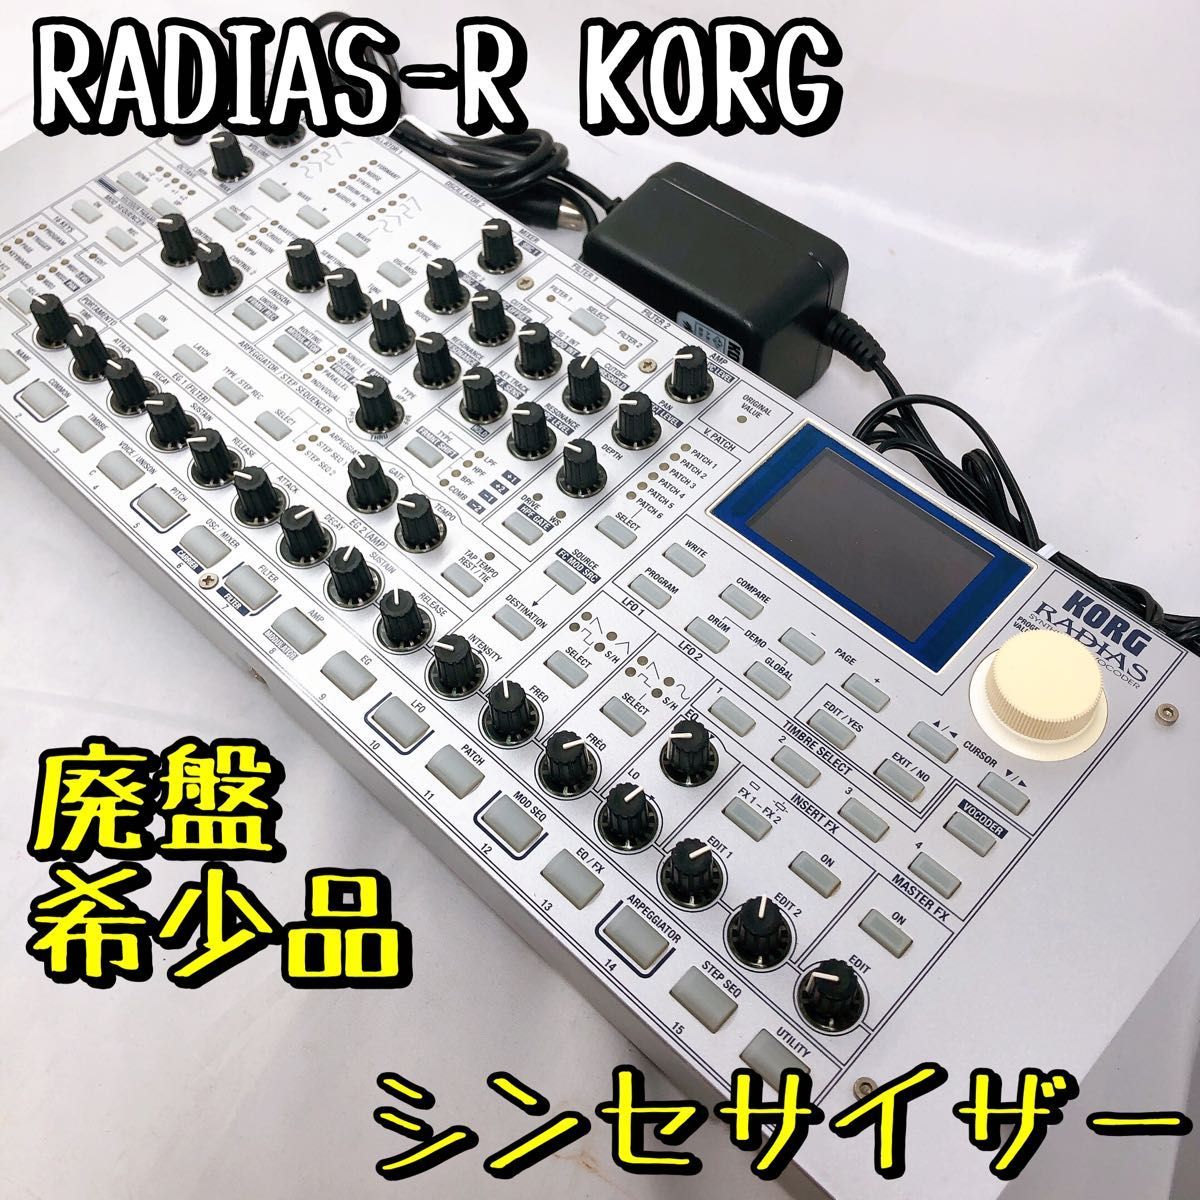 【生産中止品】RADIAS-R KORG シンセサイザー 音源モジュールのみ 内蔵ボコーダー 音響機器_画像1